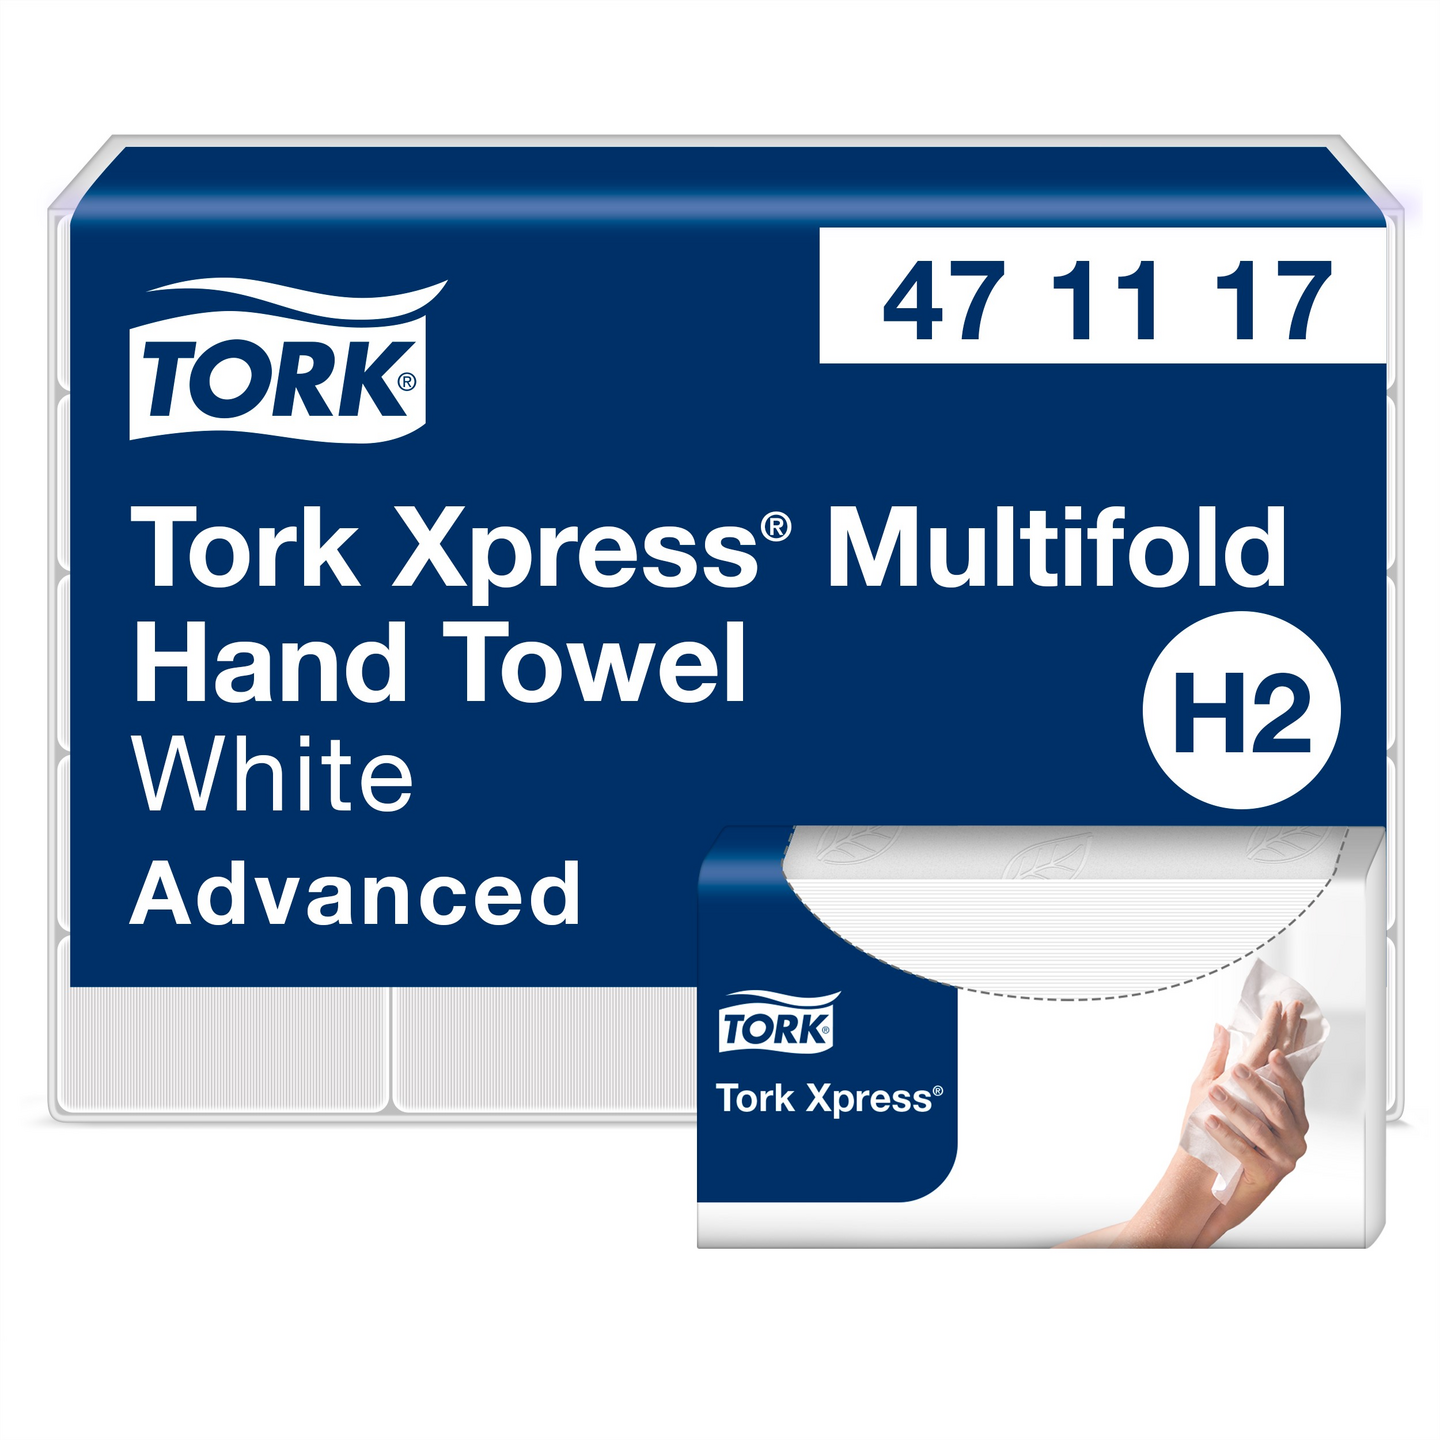 Tork Xpress käsipyyhe Multifold valkoinen 190 arkkia Advanced H2